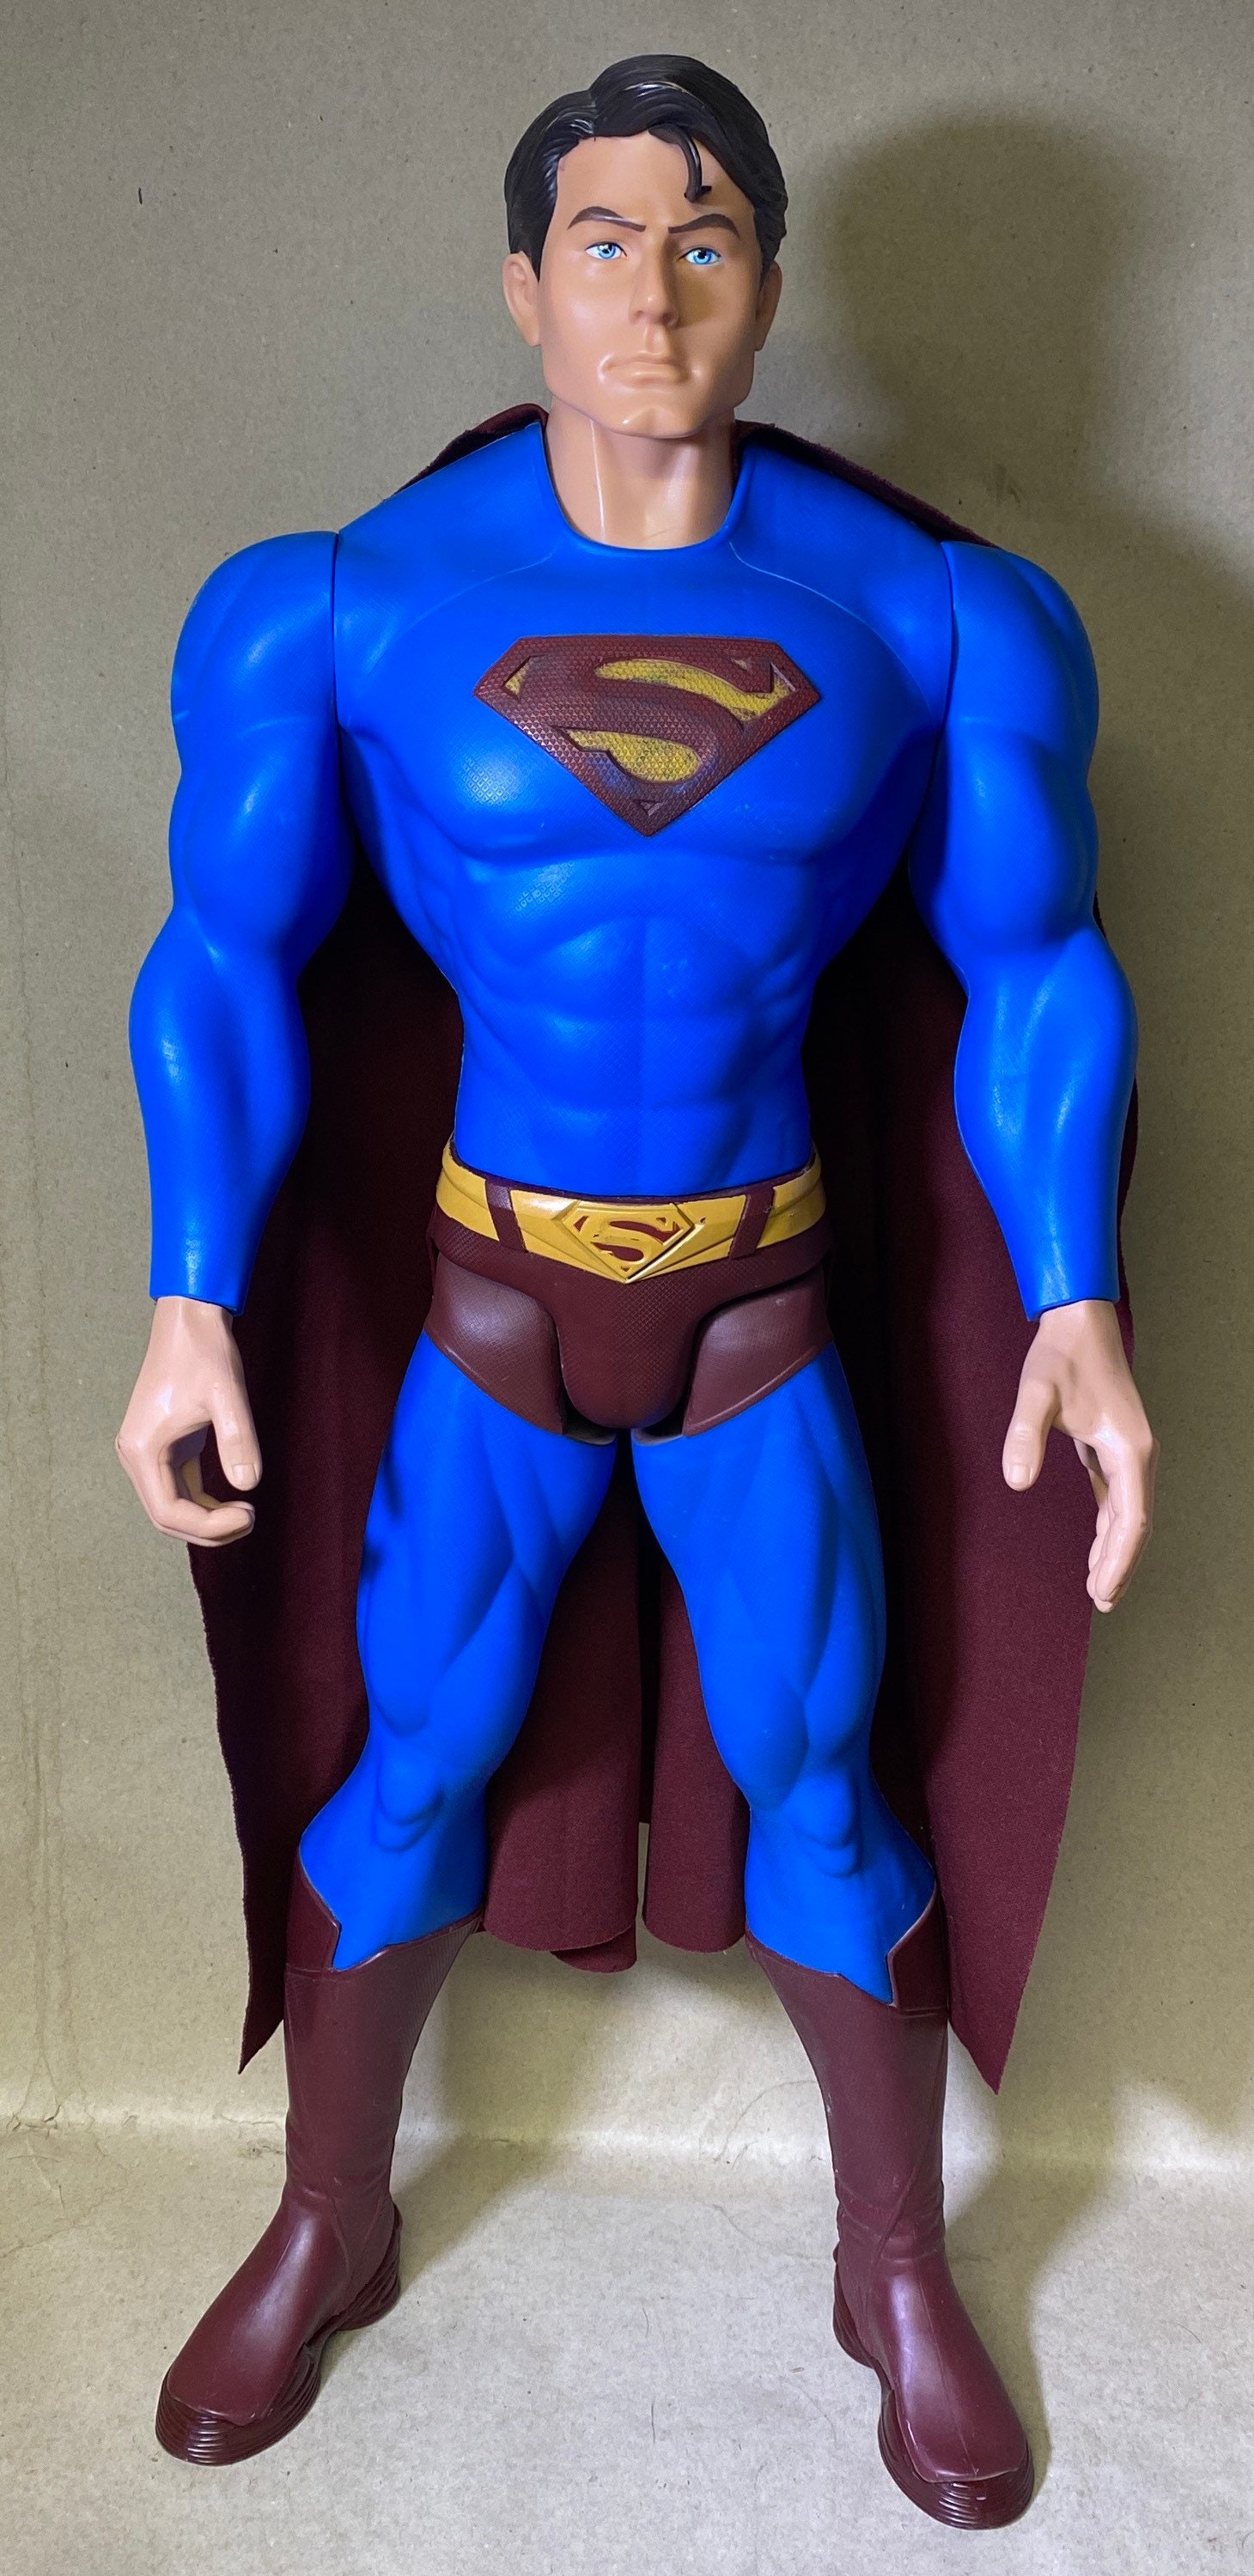 DC COMICS UNIVERSE - Figurine Articulée Superman Deluxe 30 cm